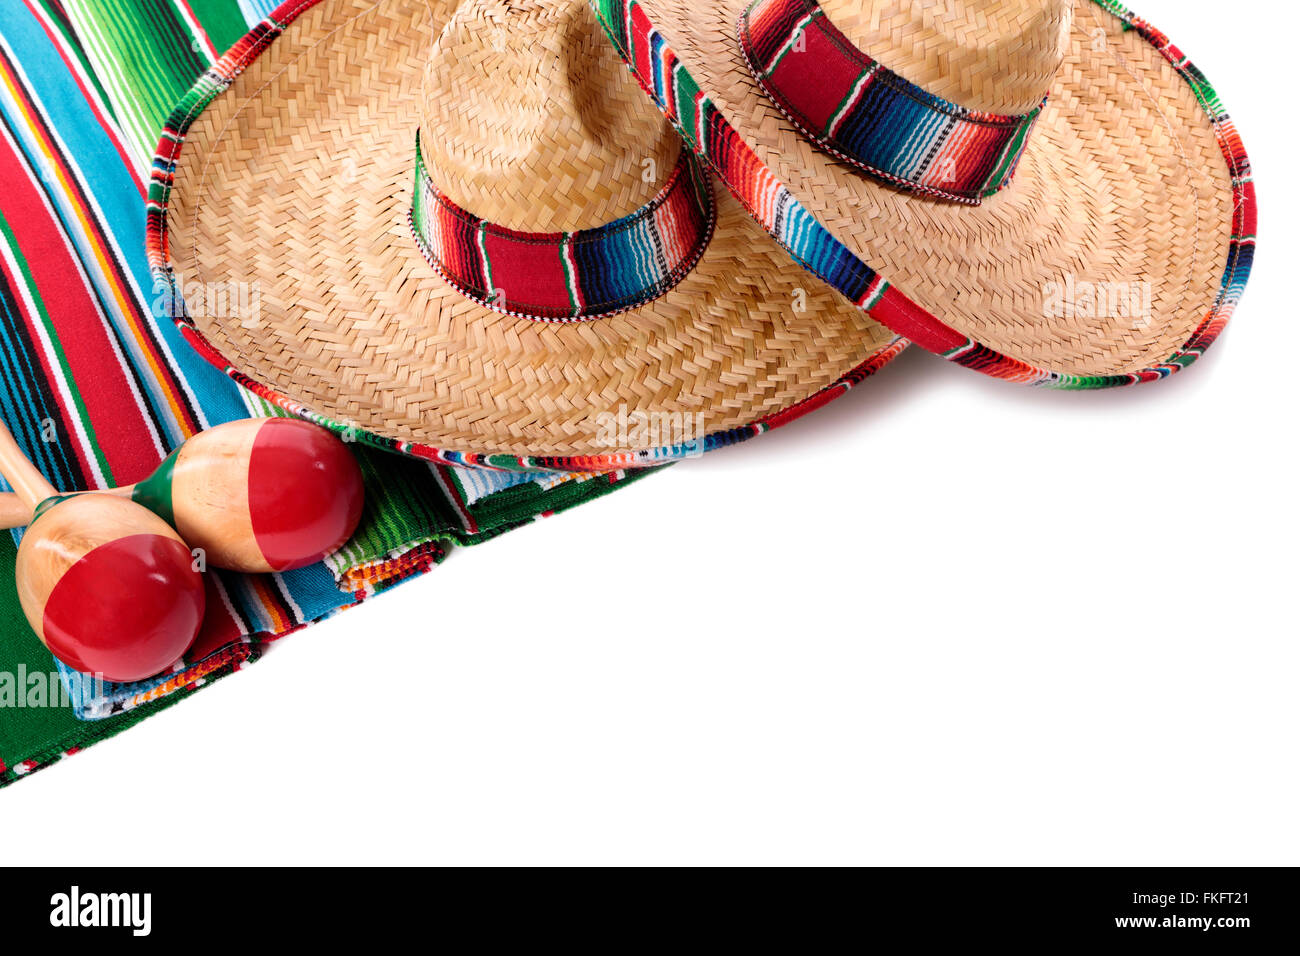 Tradizionale messicano serape coperta o tappeto con sombreros e maracas isolata contro uno sfondo bianco. Spazio per la copia. Foto Stock